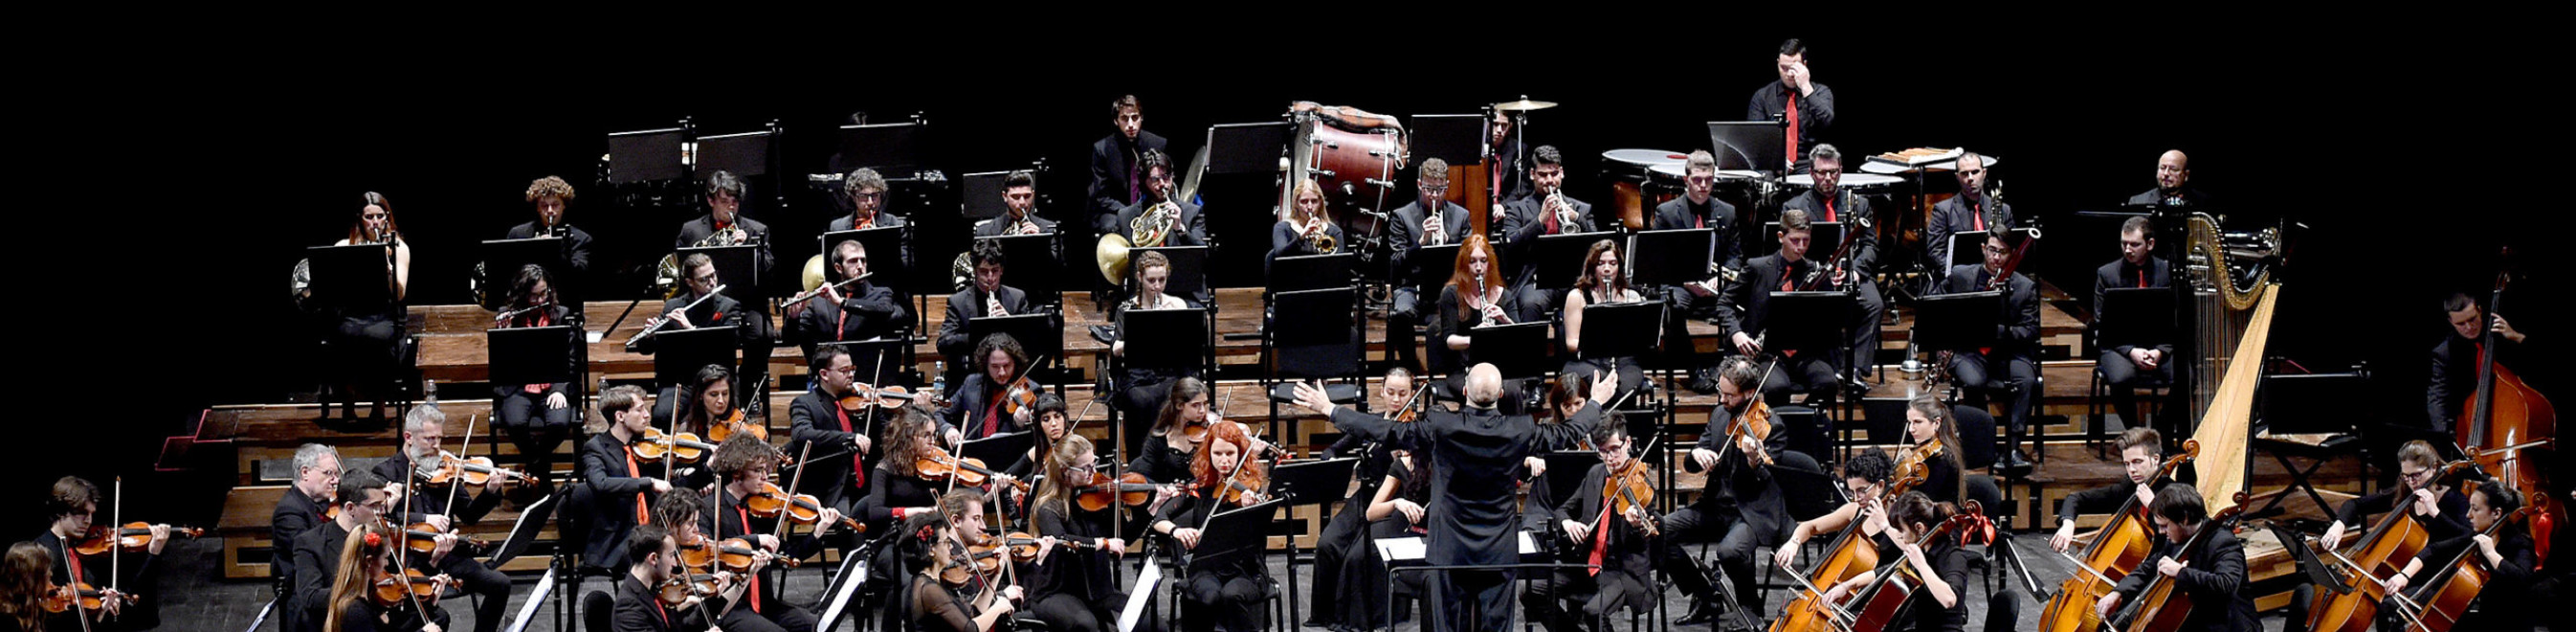 30/4 - BOLERO suonato dall'Orchestra congiunta Teatro Goldoni e Conservatorio "P. Mascagni"